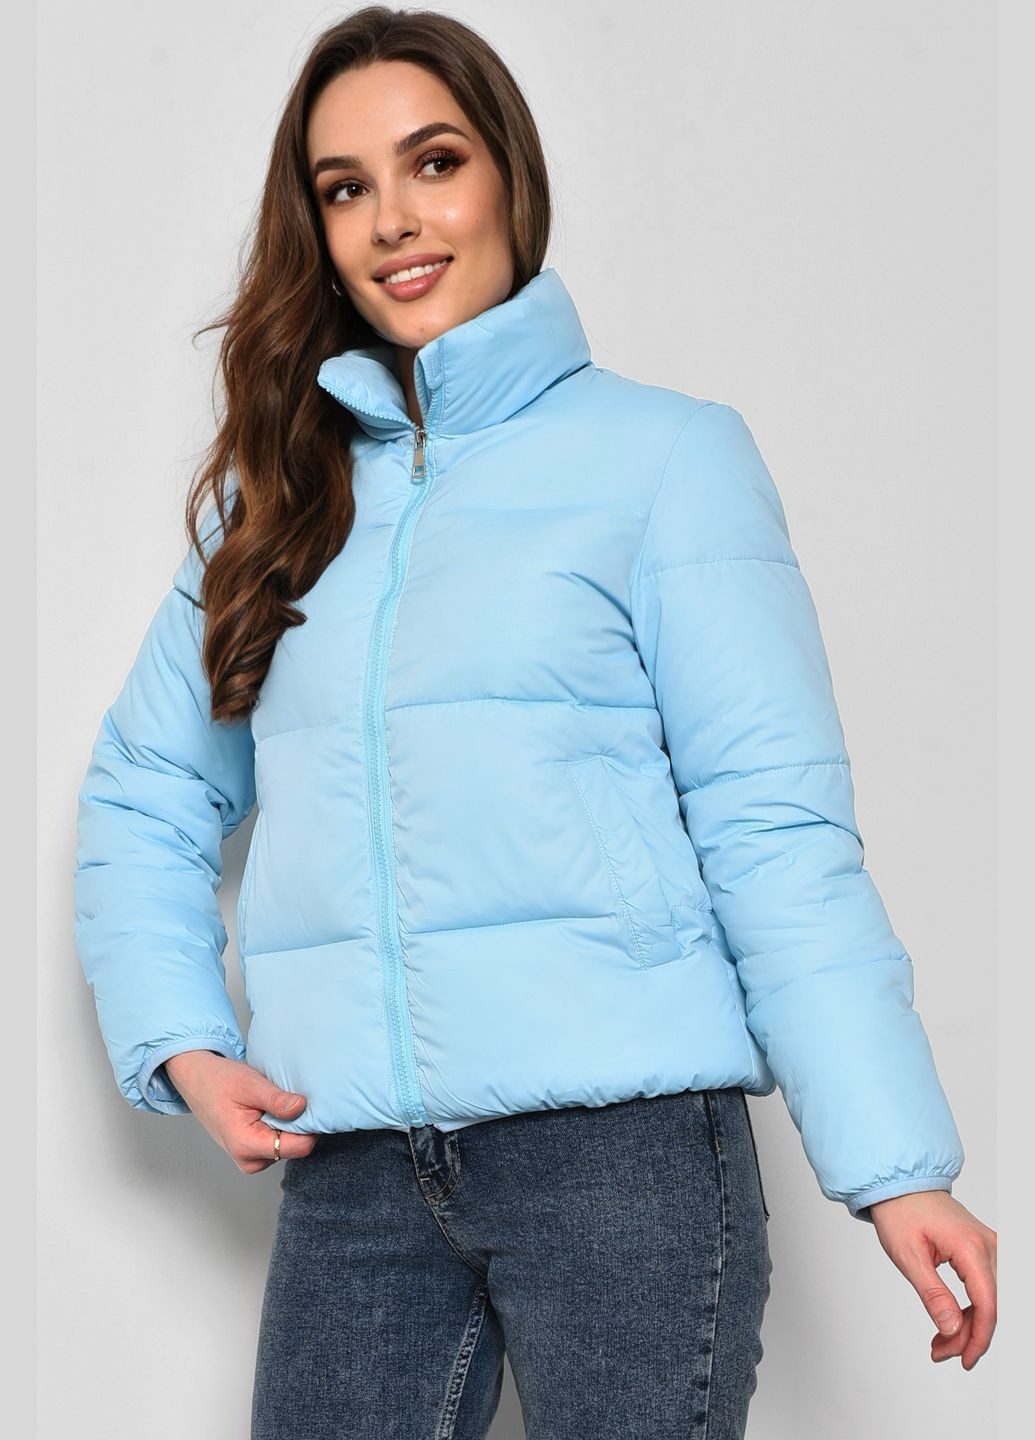 Голубая демисезонная куртка женская демисезонная голубого цвета Let's Shop